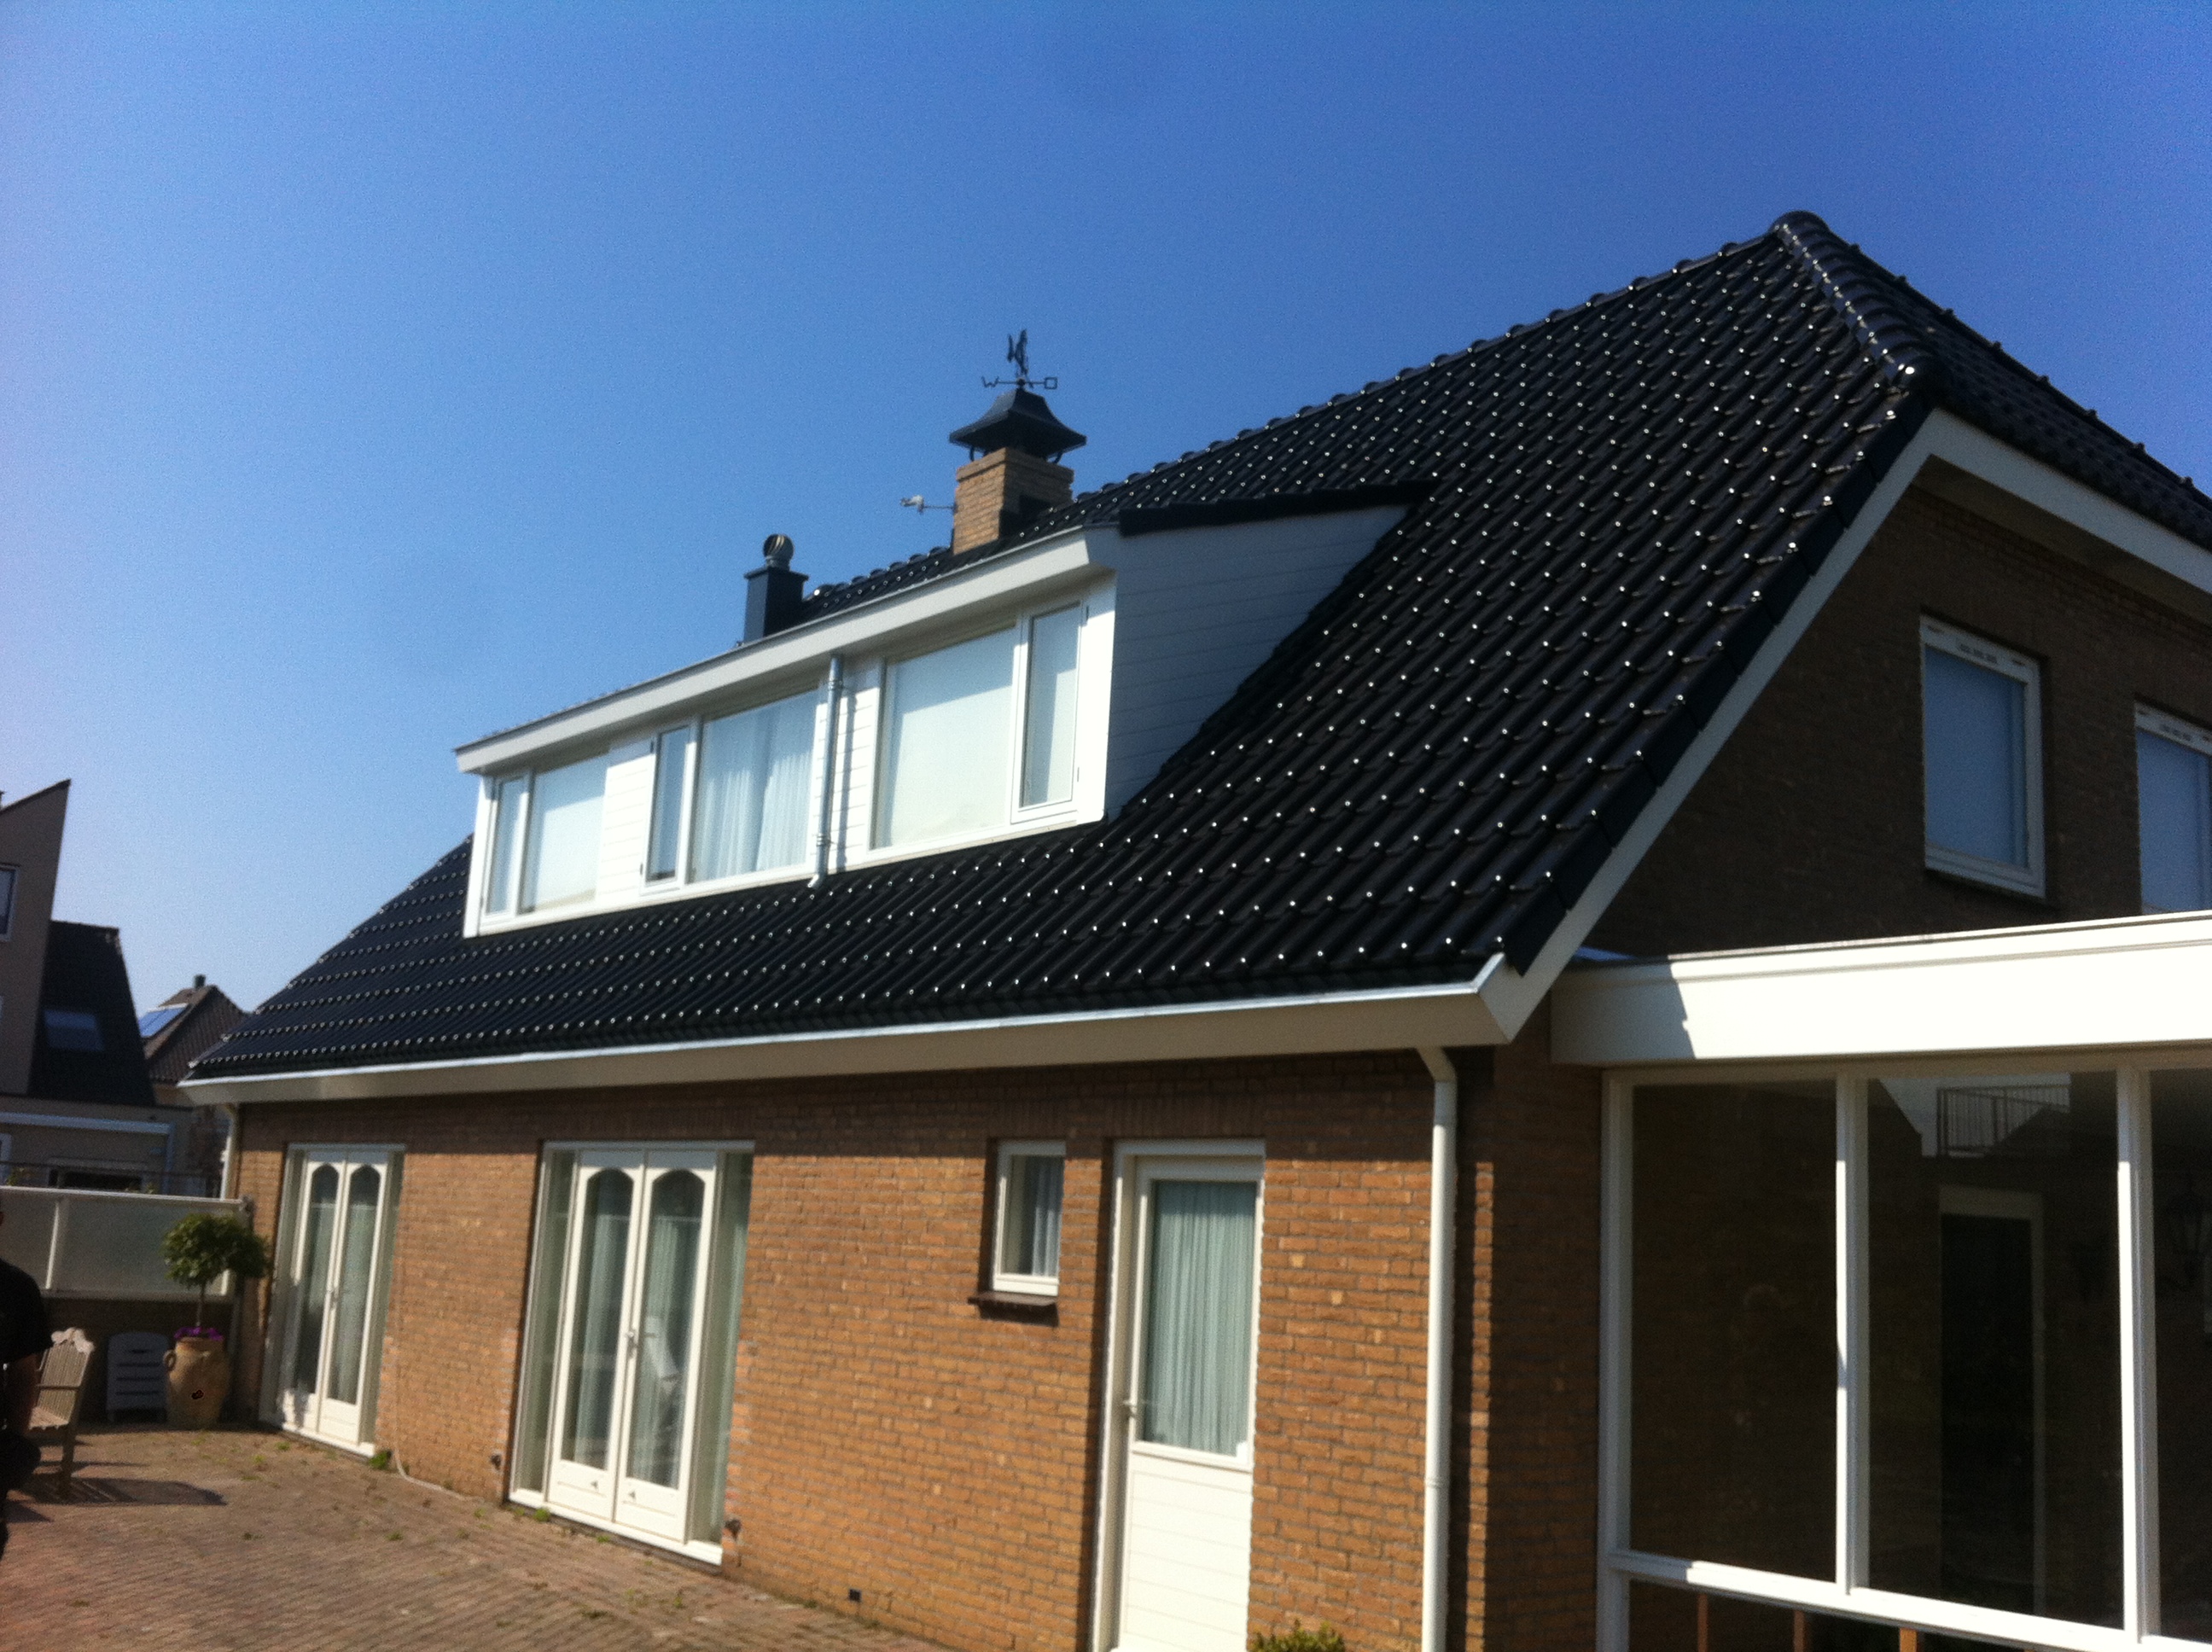 Dakrenovatie: vervangen dakpannen en aanpassen dakkapel